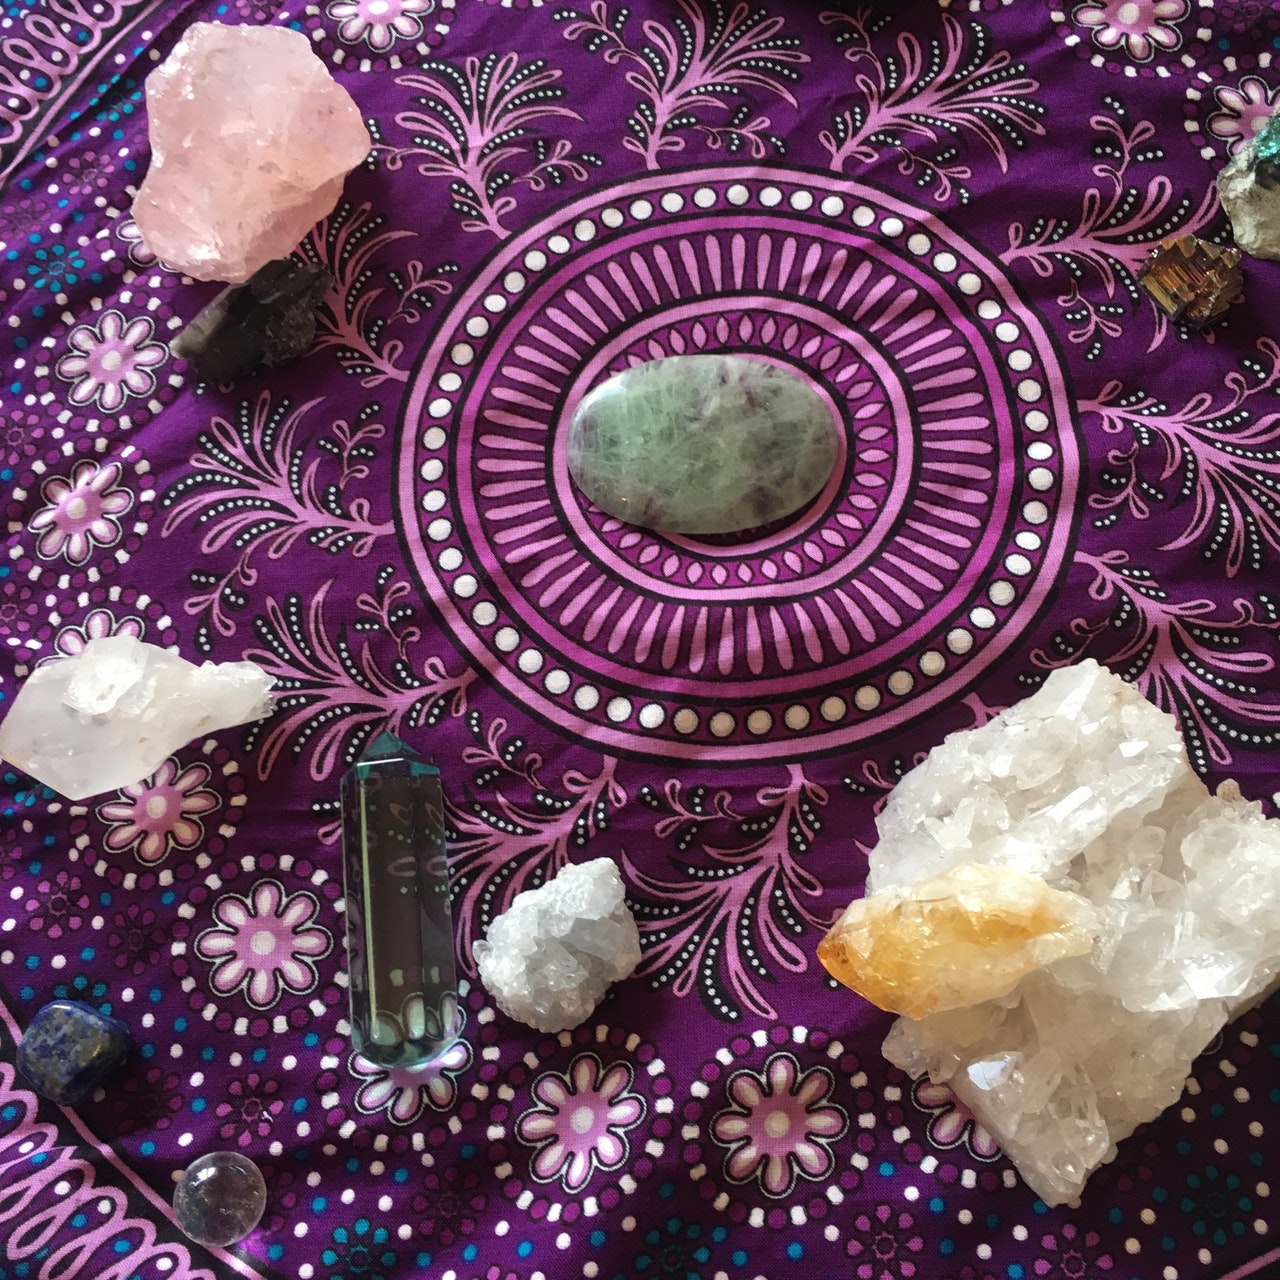 Spiritual Healing that works using spiritual stones